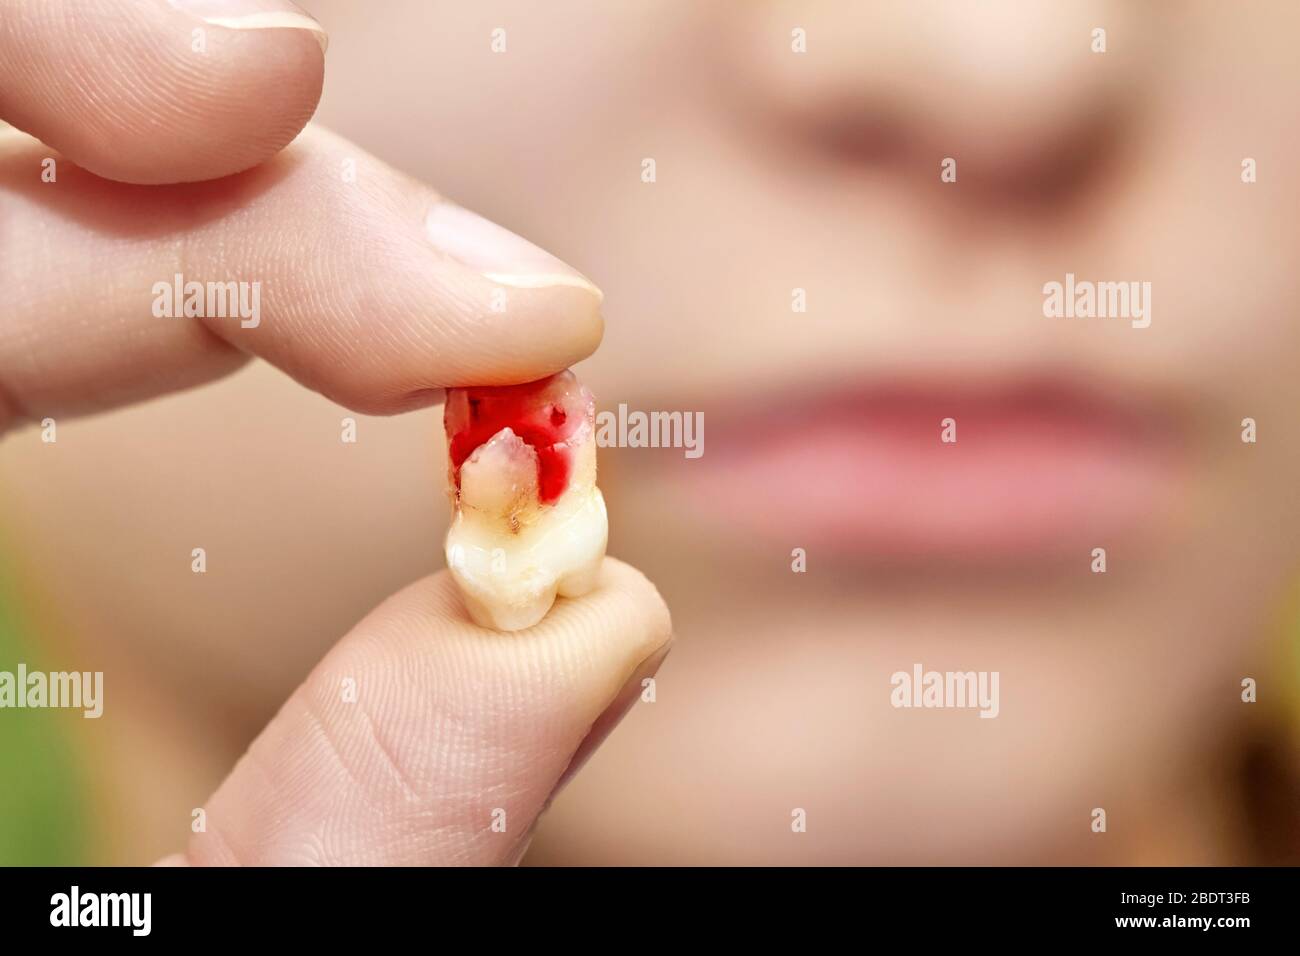 Une petite fille tient une dent tombée avec du sang dans sa main. Gros plan, mise au point sélective Banque D'Images